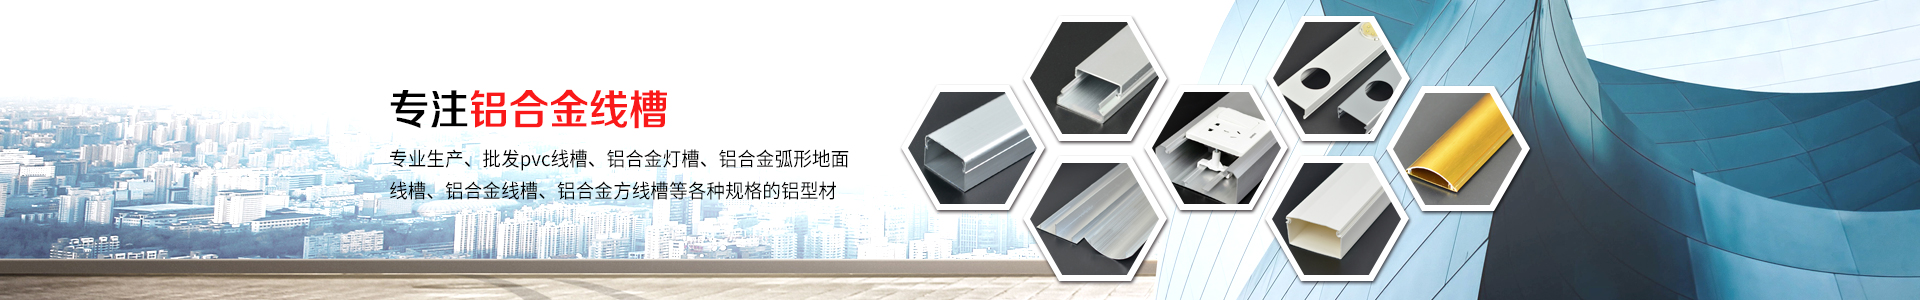 LED冲孔点光源铝合金线槽-江阴市鸣诚铝业有限公司